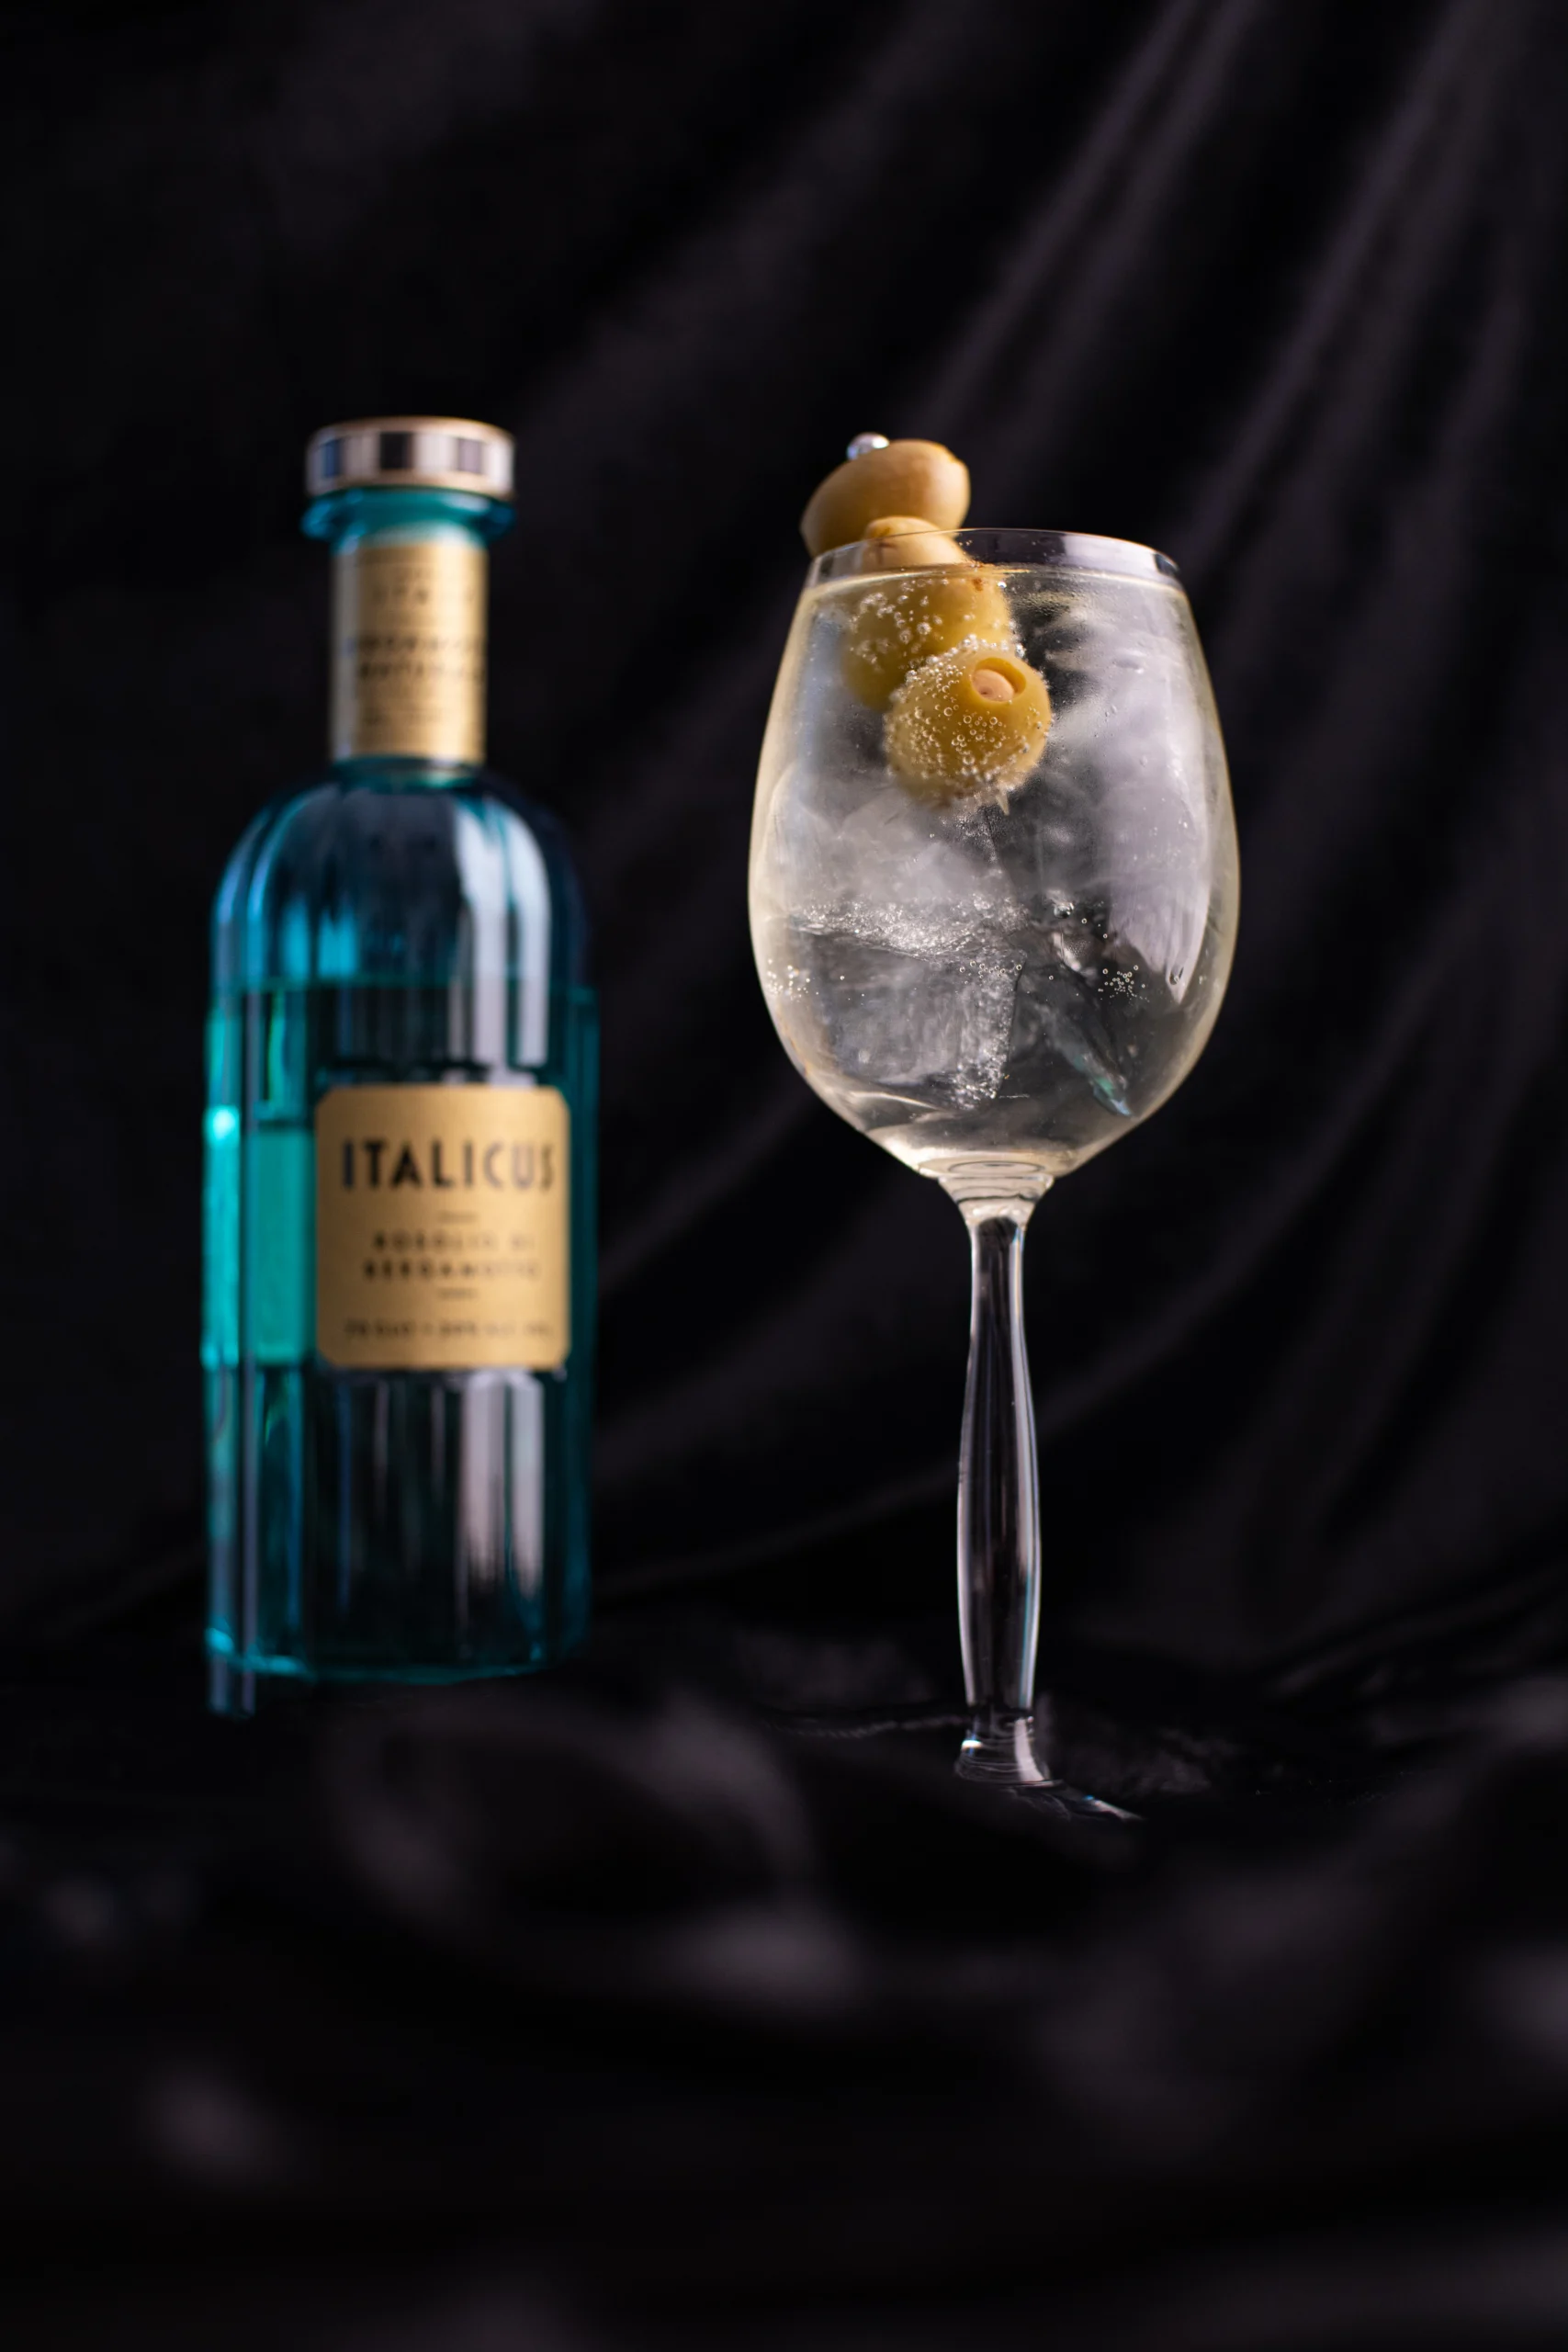 Italicus Spritz cocktail